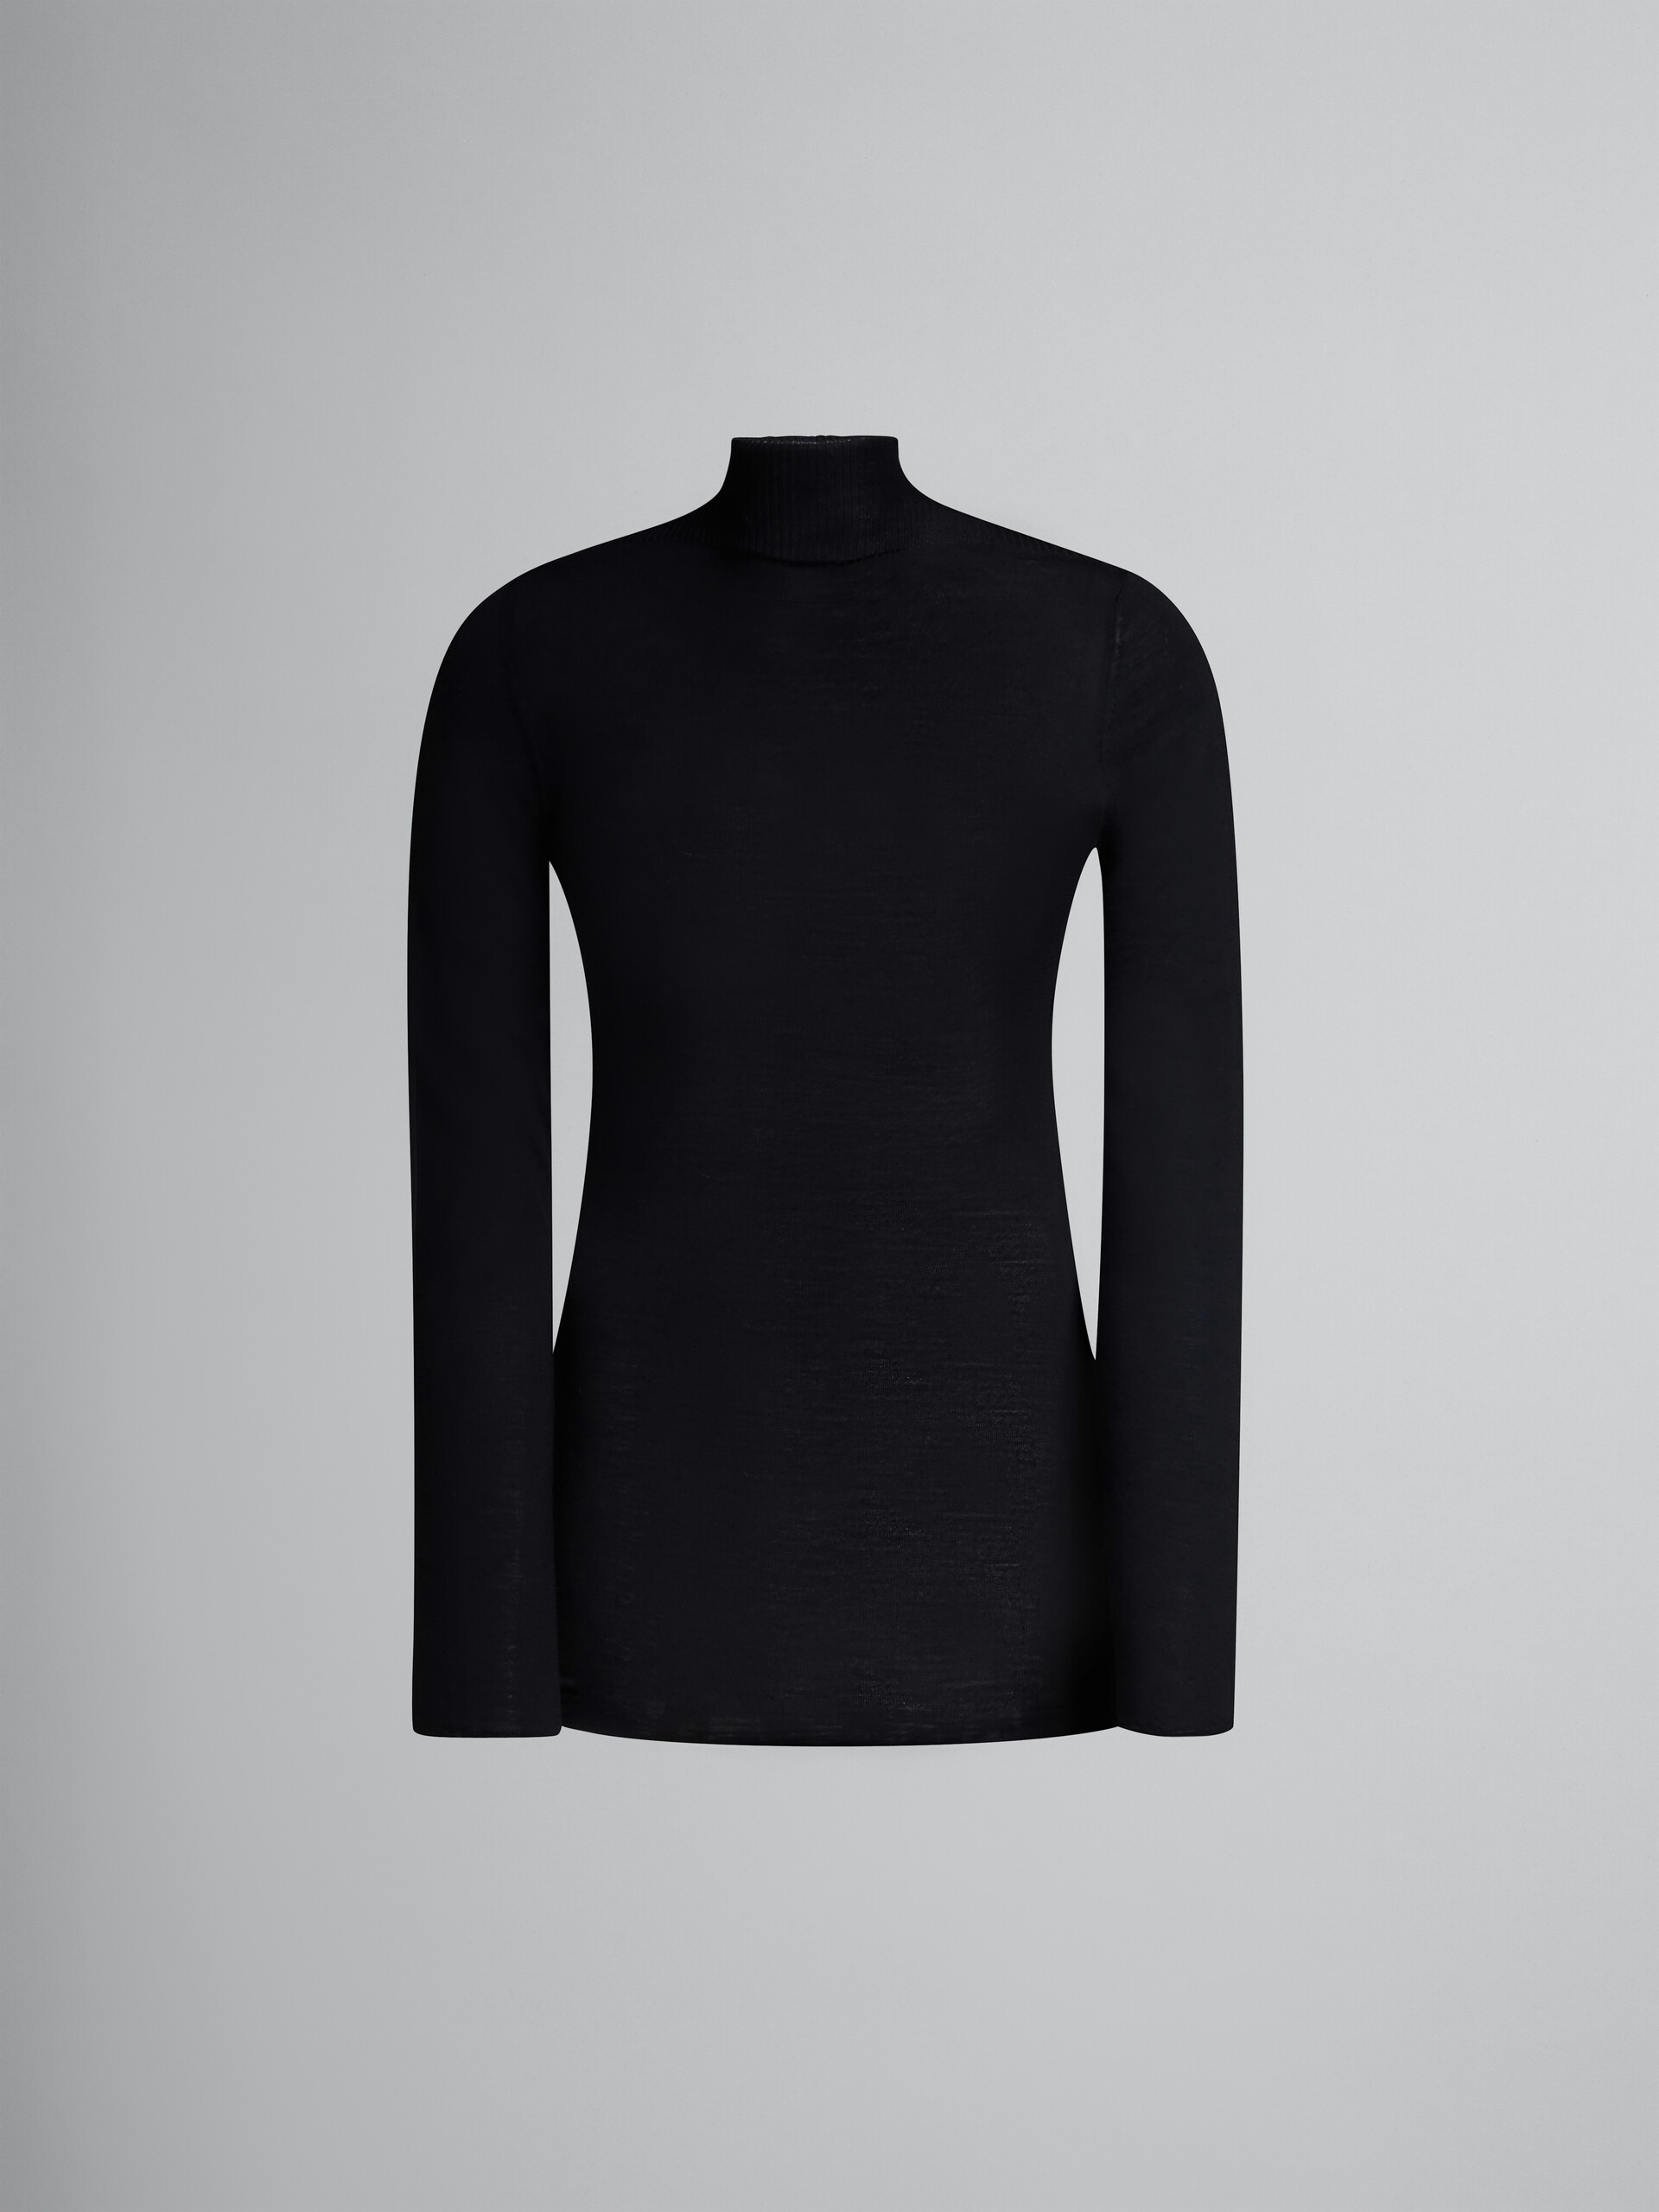 Jersey negro de cuello alto de lana - jerseys - Image 1